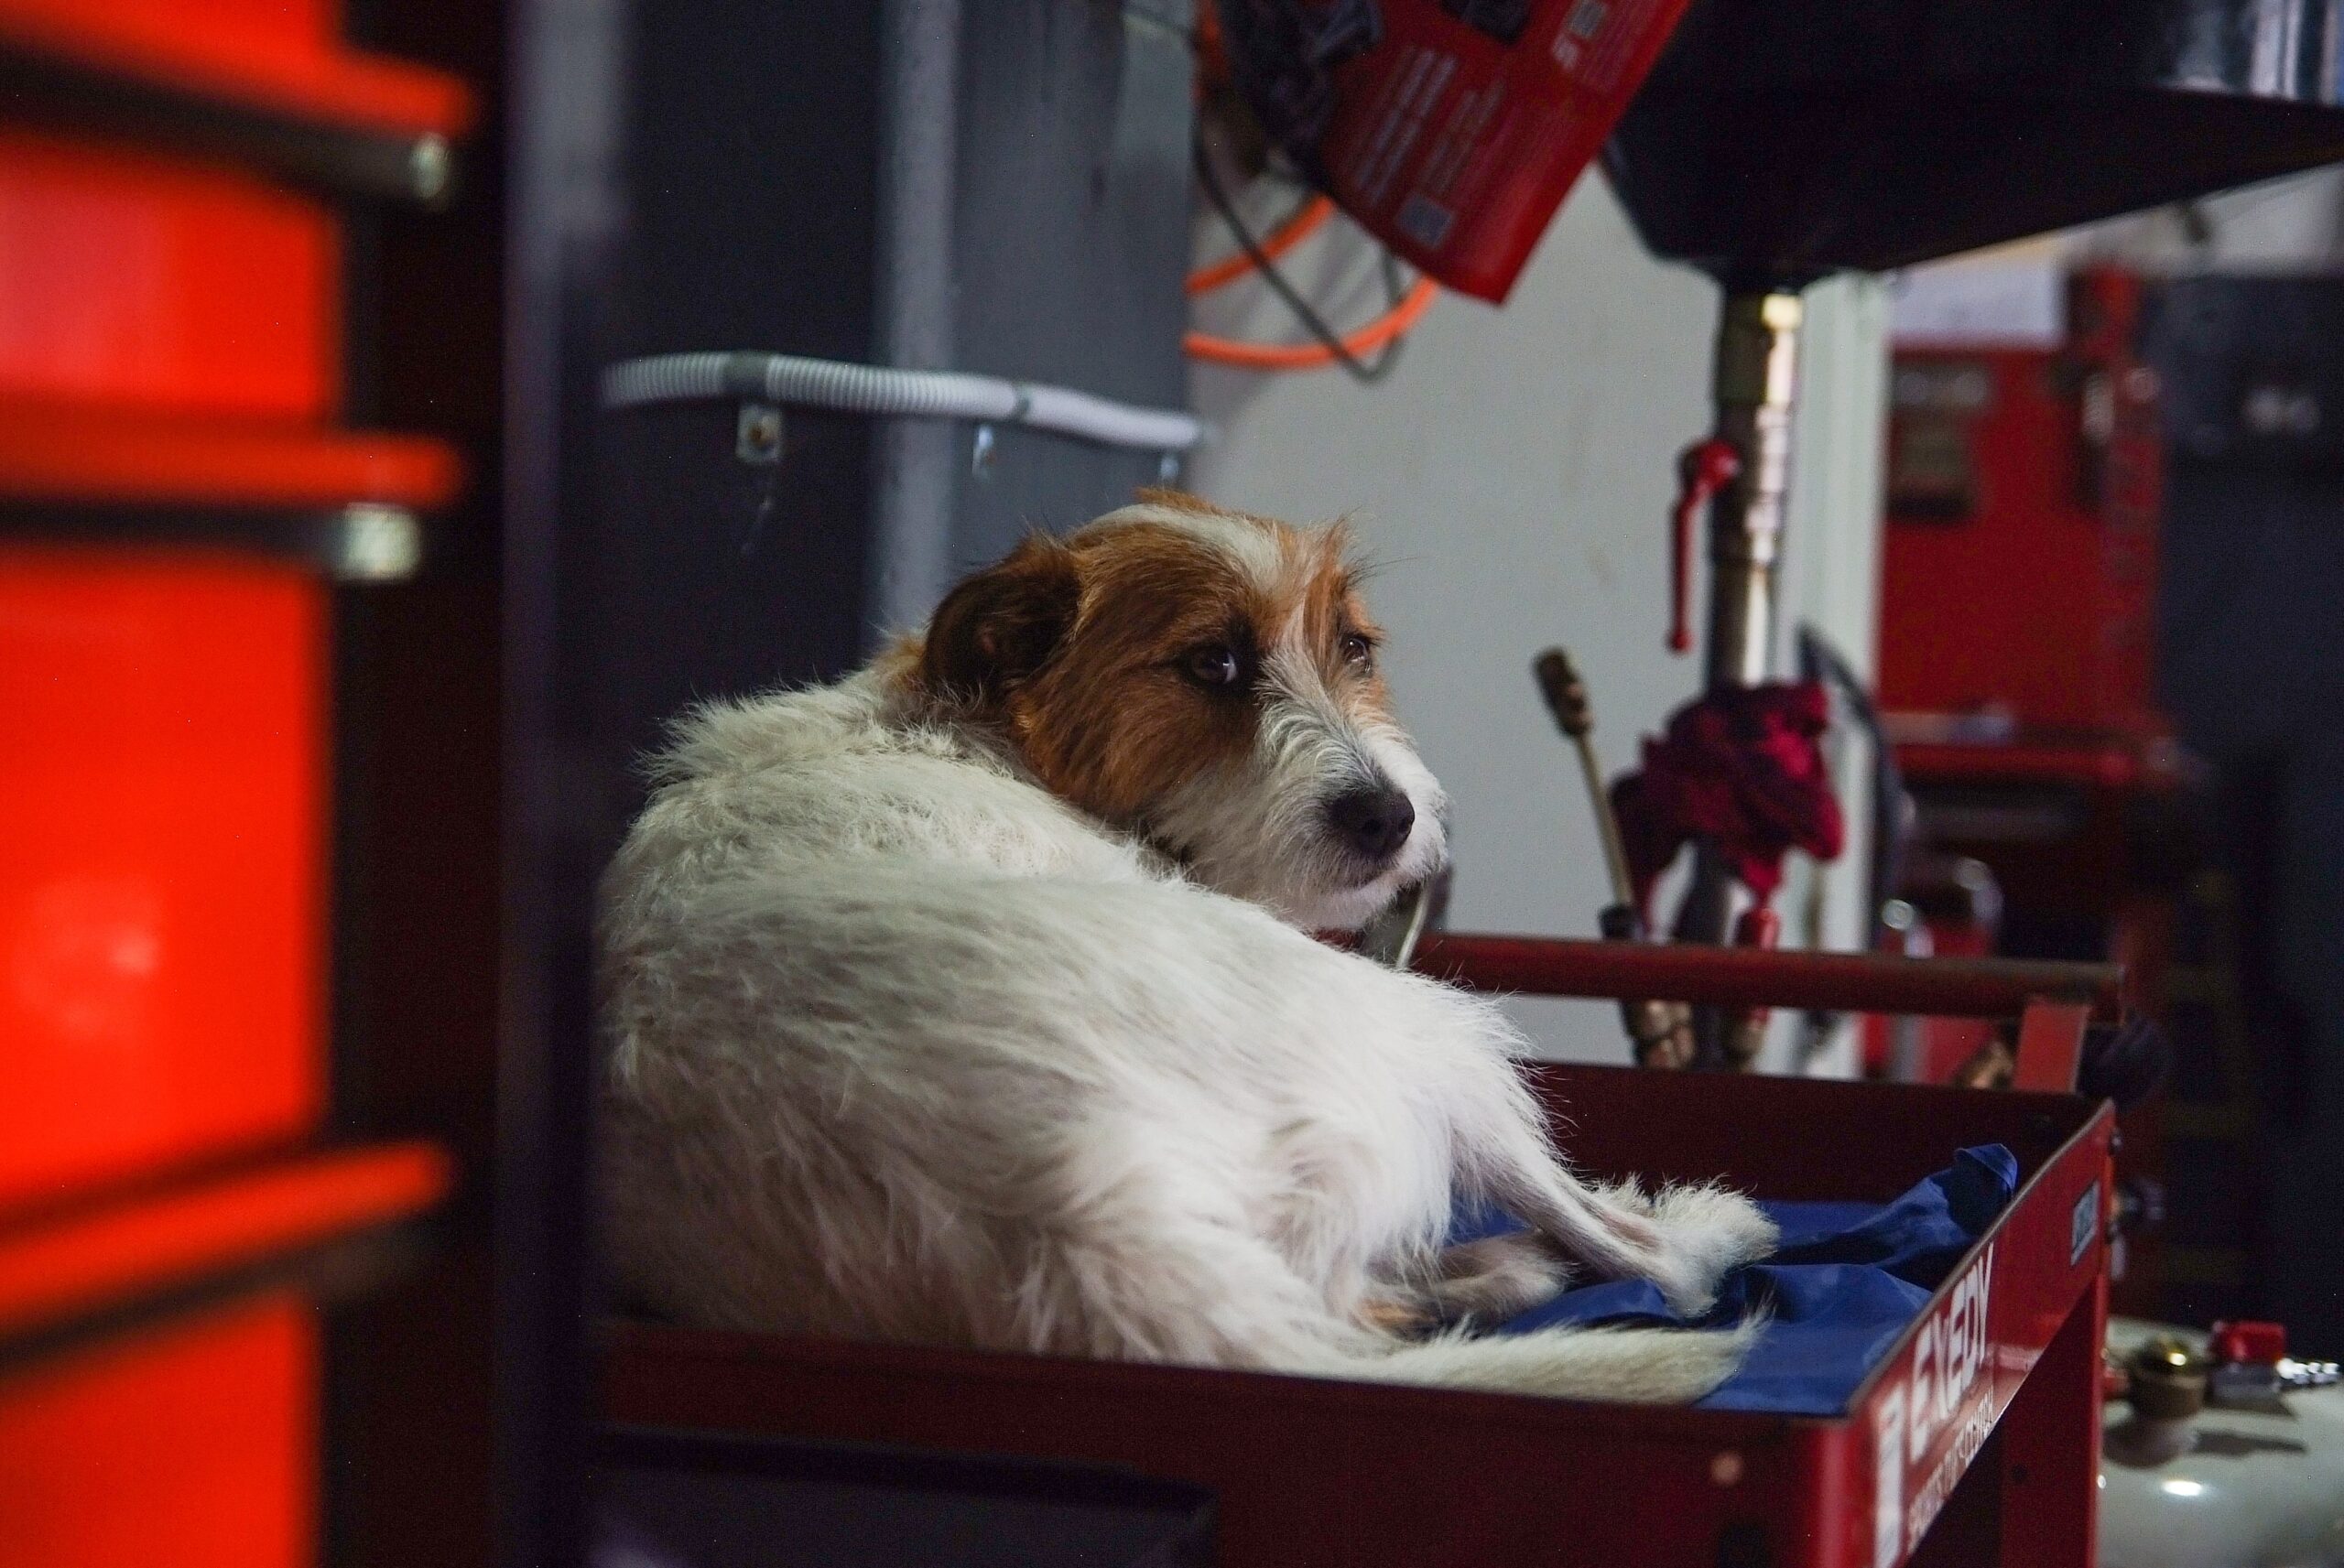 Dog on top of hardware cart inside commercial garage by Elizabeth Crawley on Unsplash